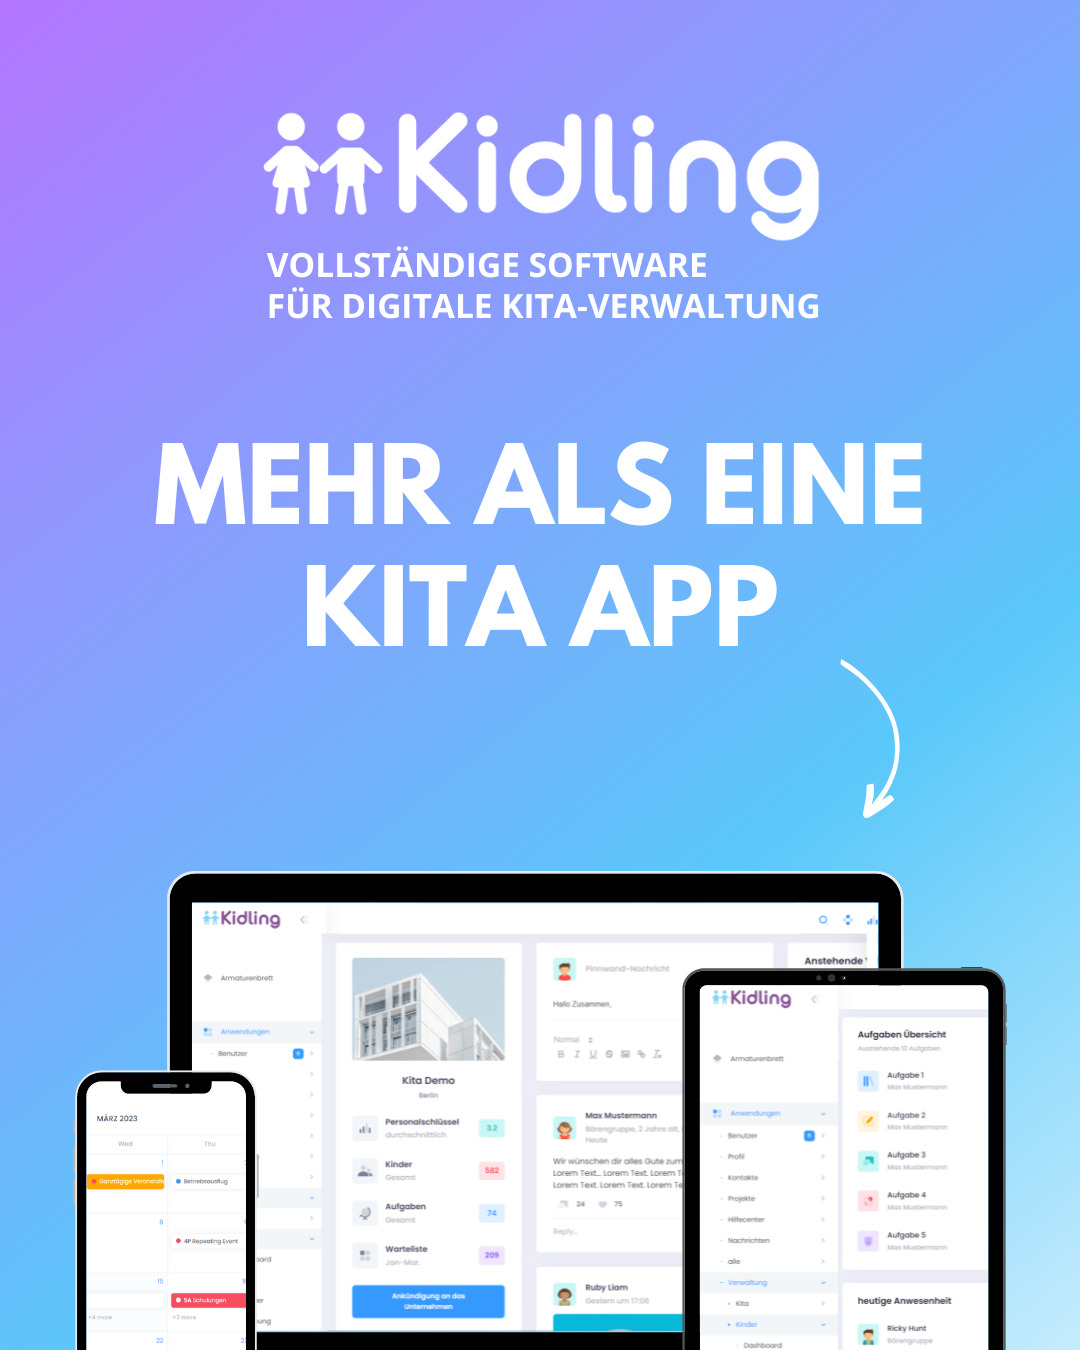 Kidling mehr als eine Kita App vollständige Kita Software